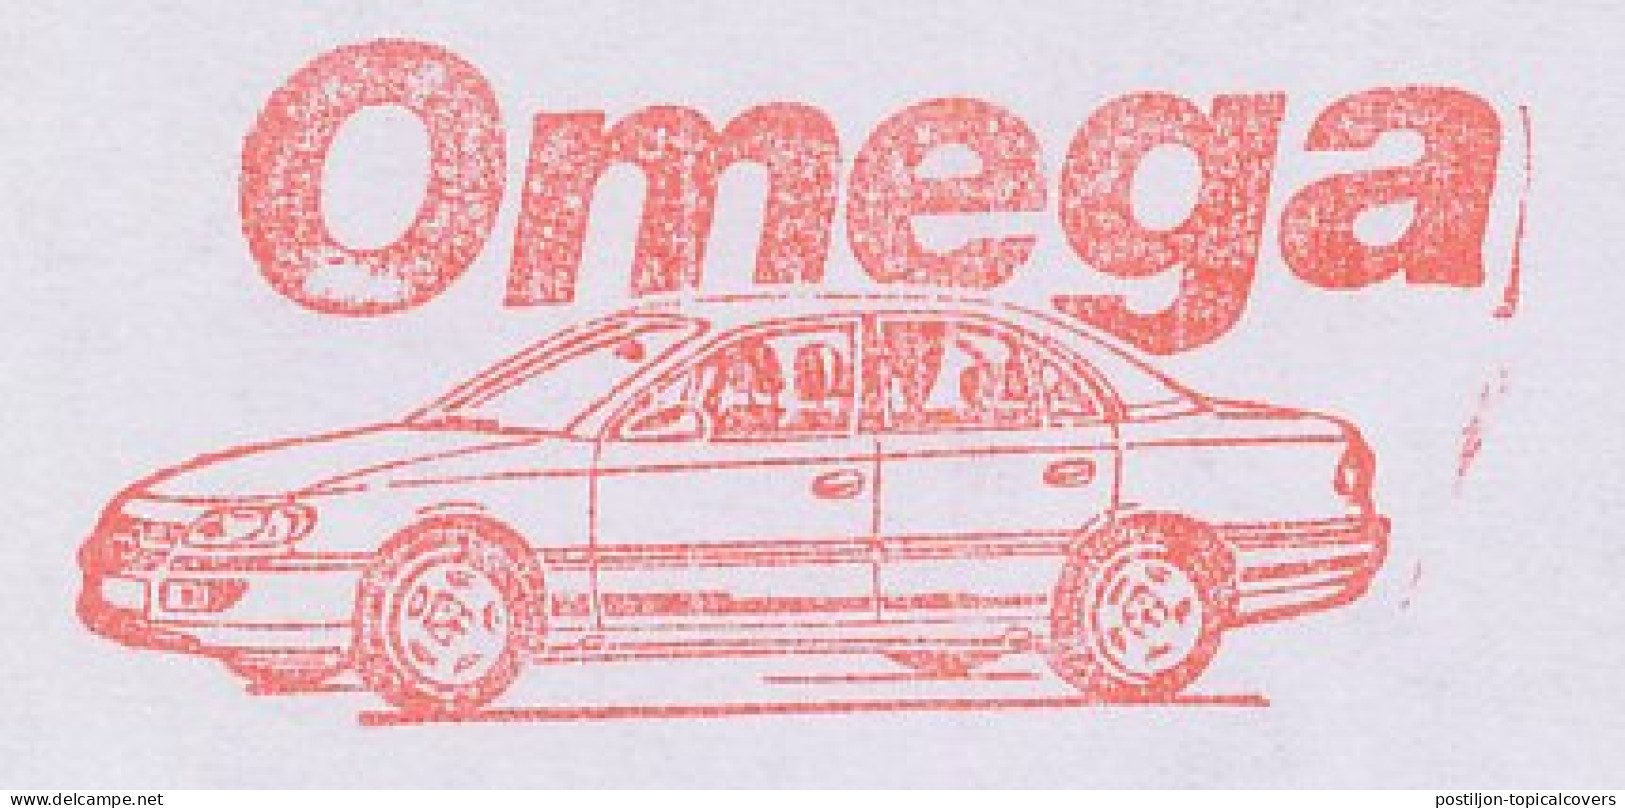 Meter Cut Germany 1997 Car - Opel Omega - Cars